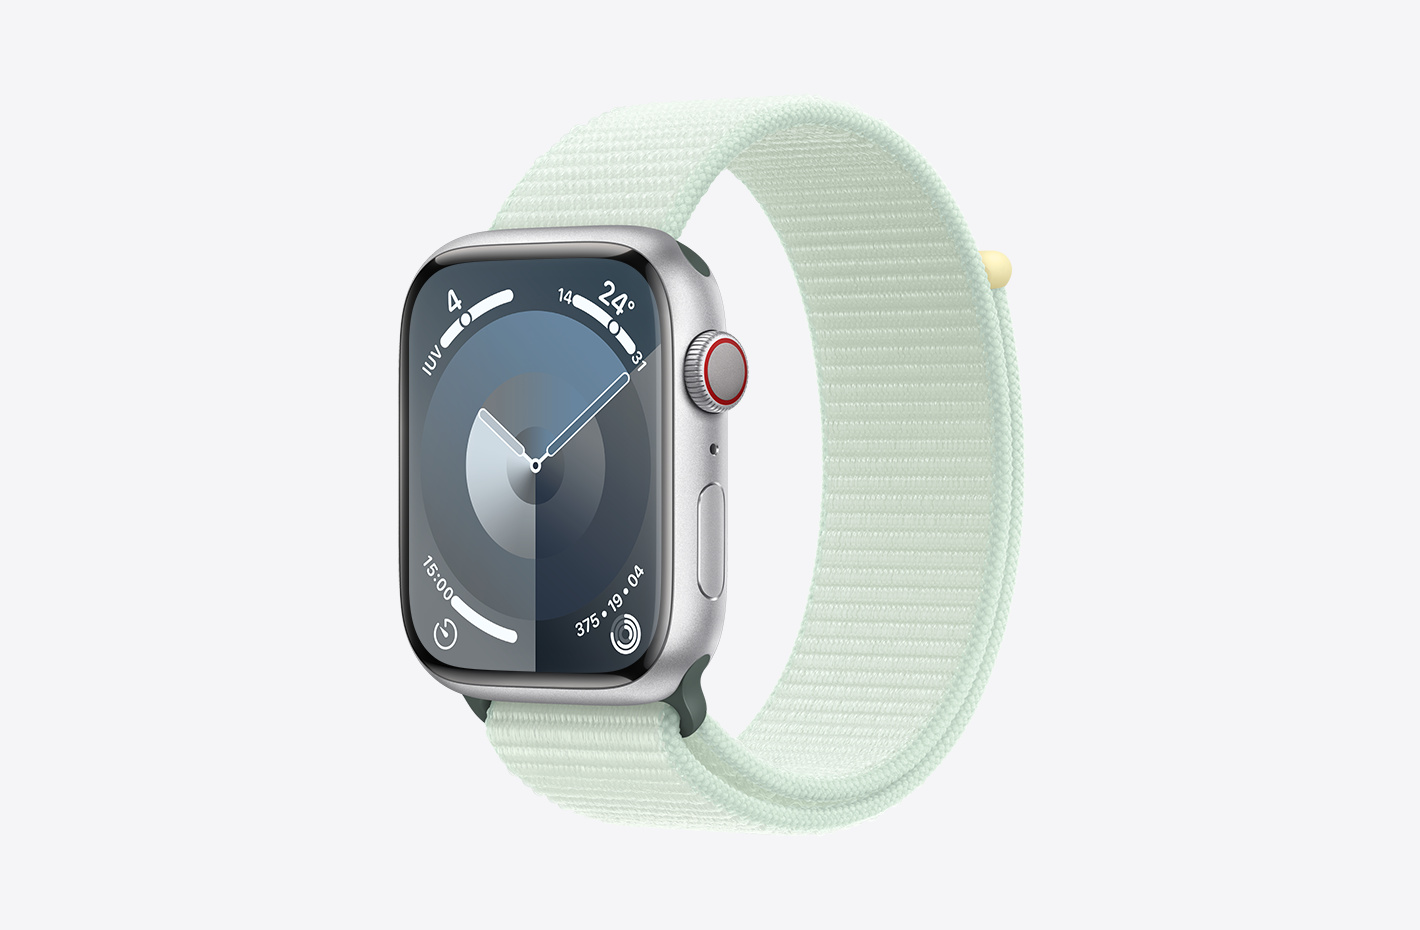 Apple Watch com caixa prateada de alumínio com acabamento fosco e imagem angulada de uma pulseira loop esportiva menta-suave (verde), que tem fecho fácil de ajustar e camada dupla de trama de nylon.